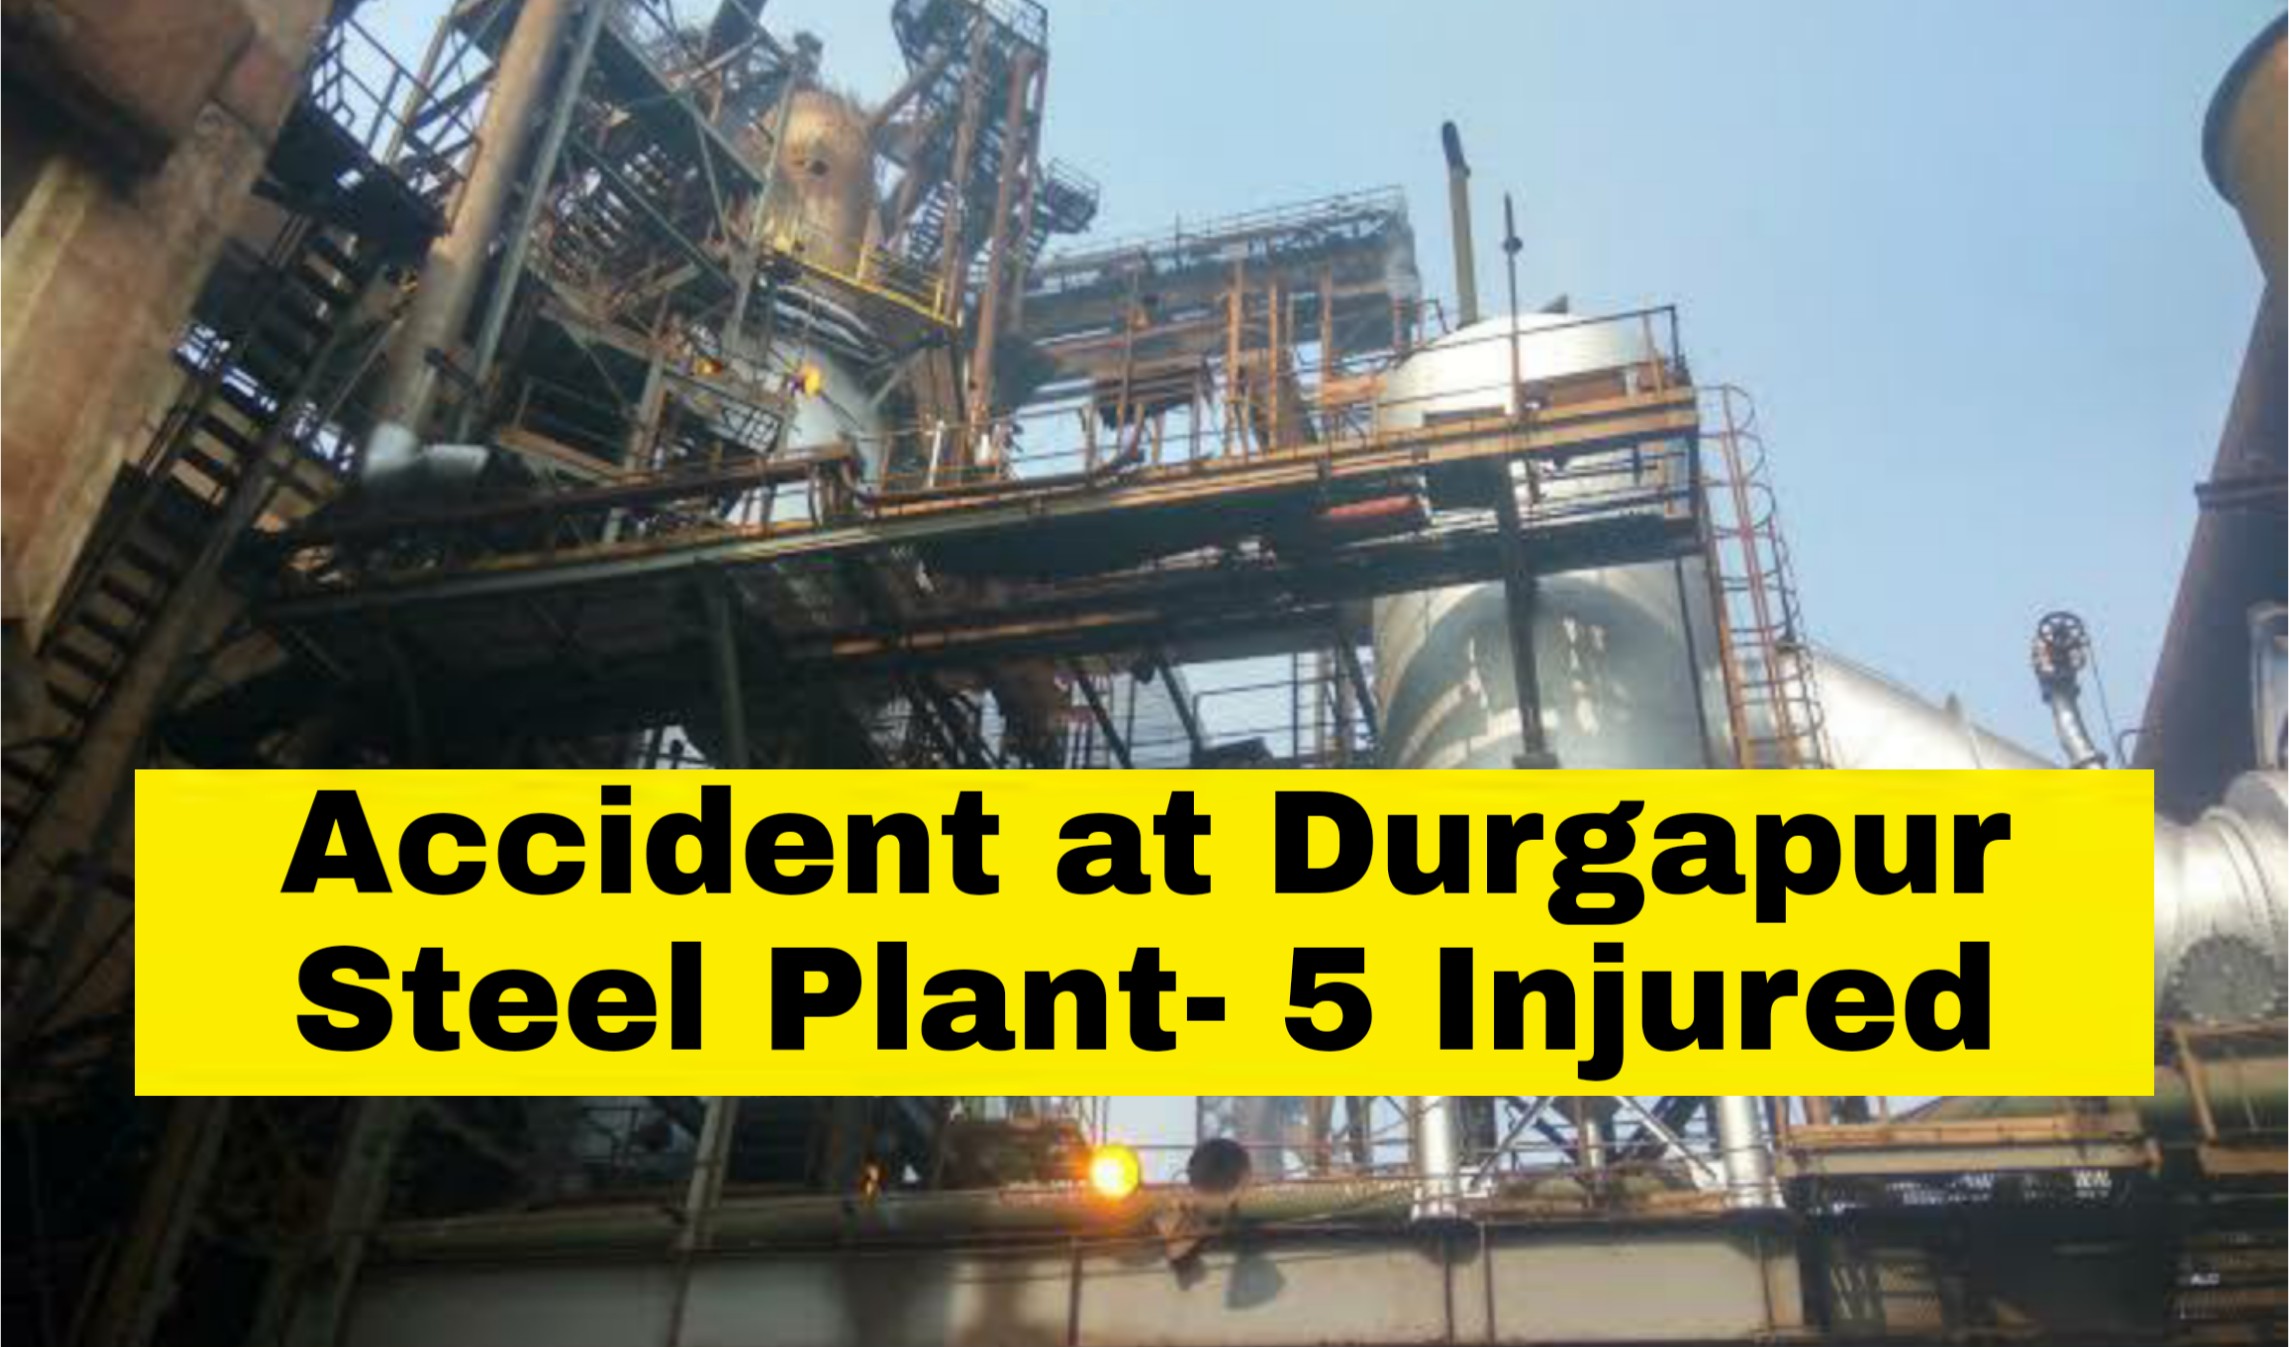 Durgapur steel plant accident